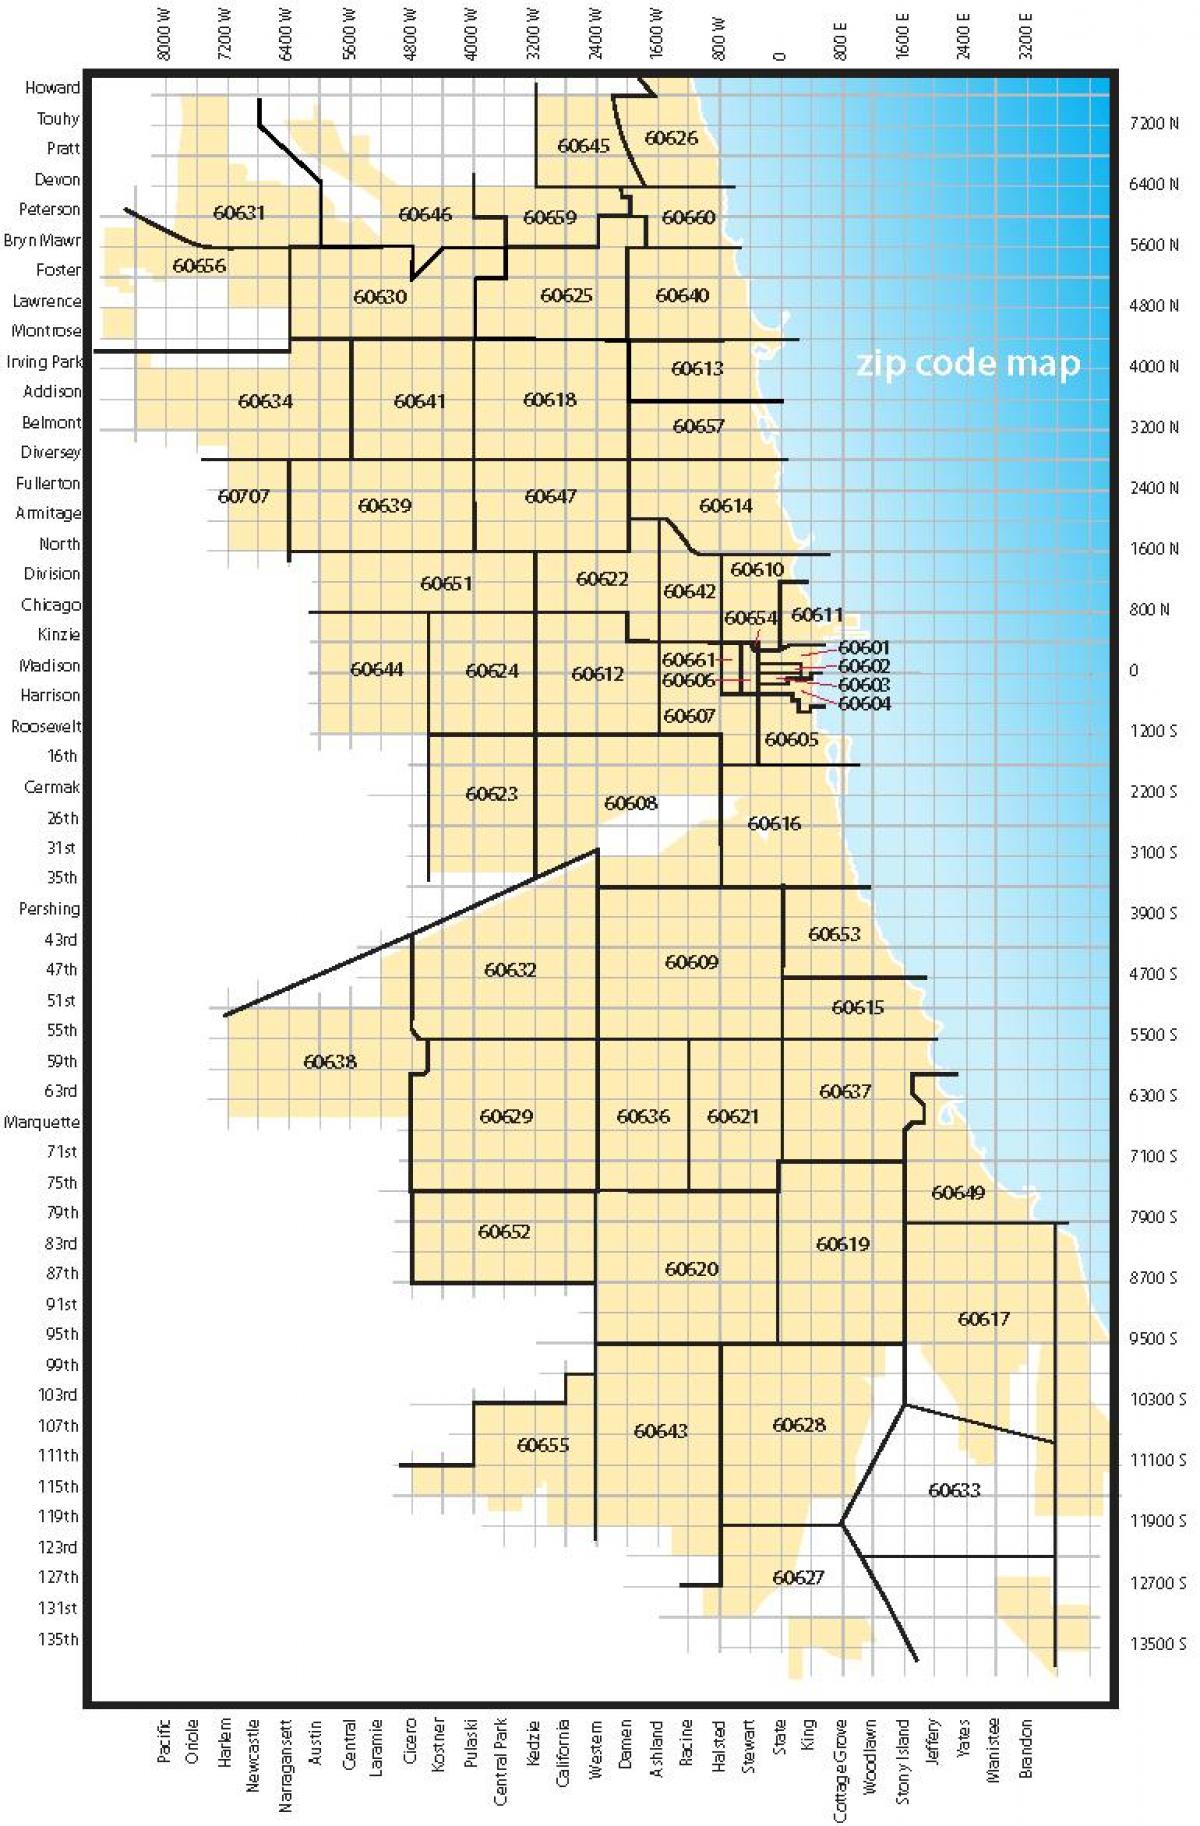 Chicago codi d'àrea mapa